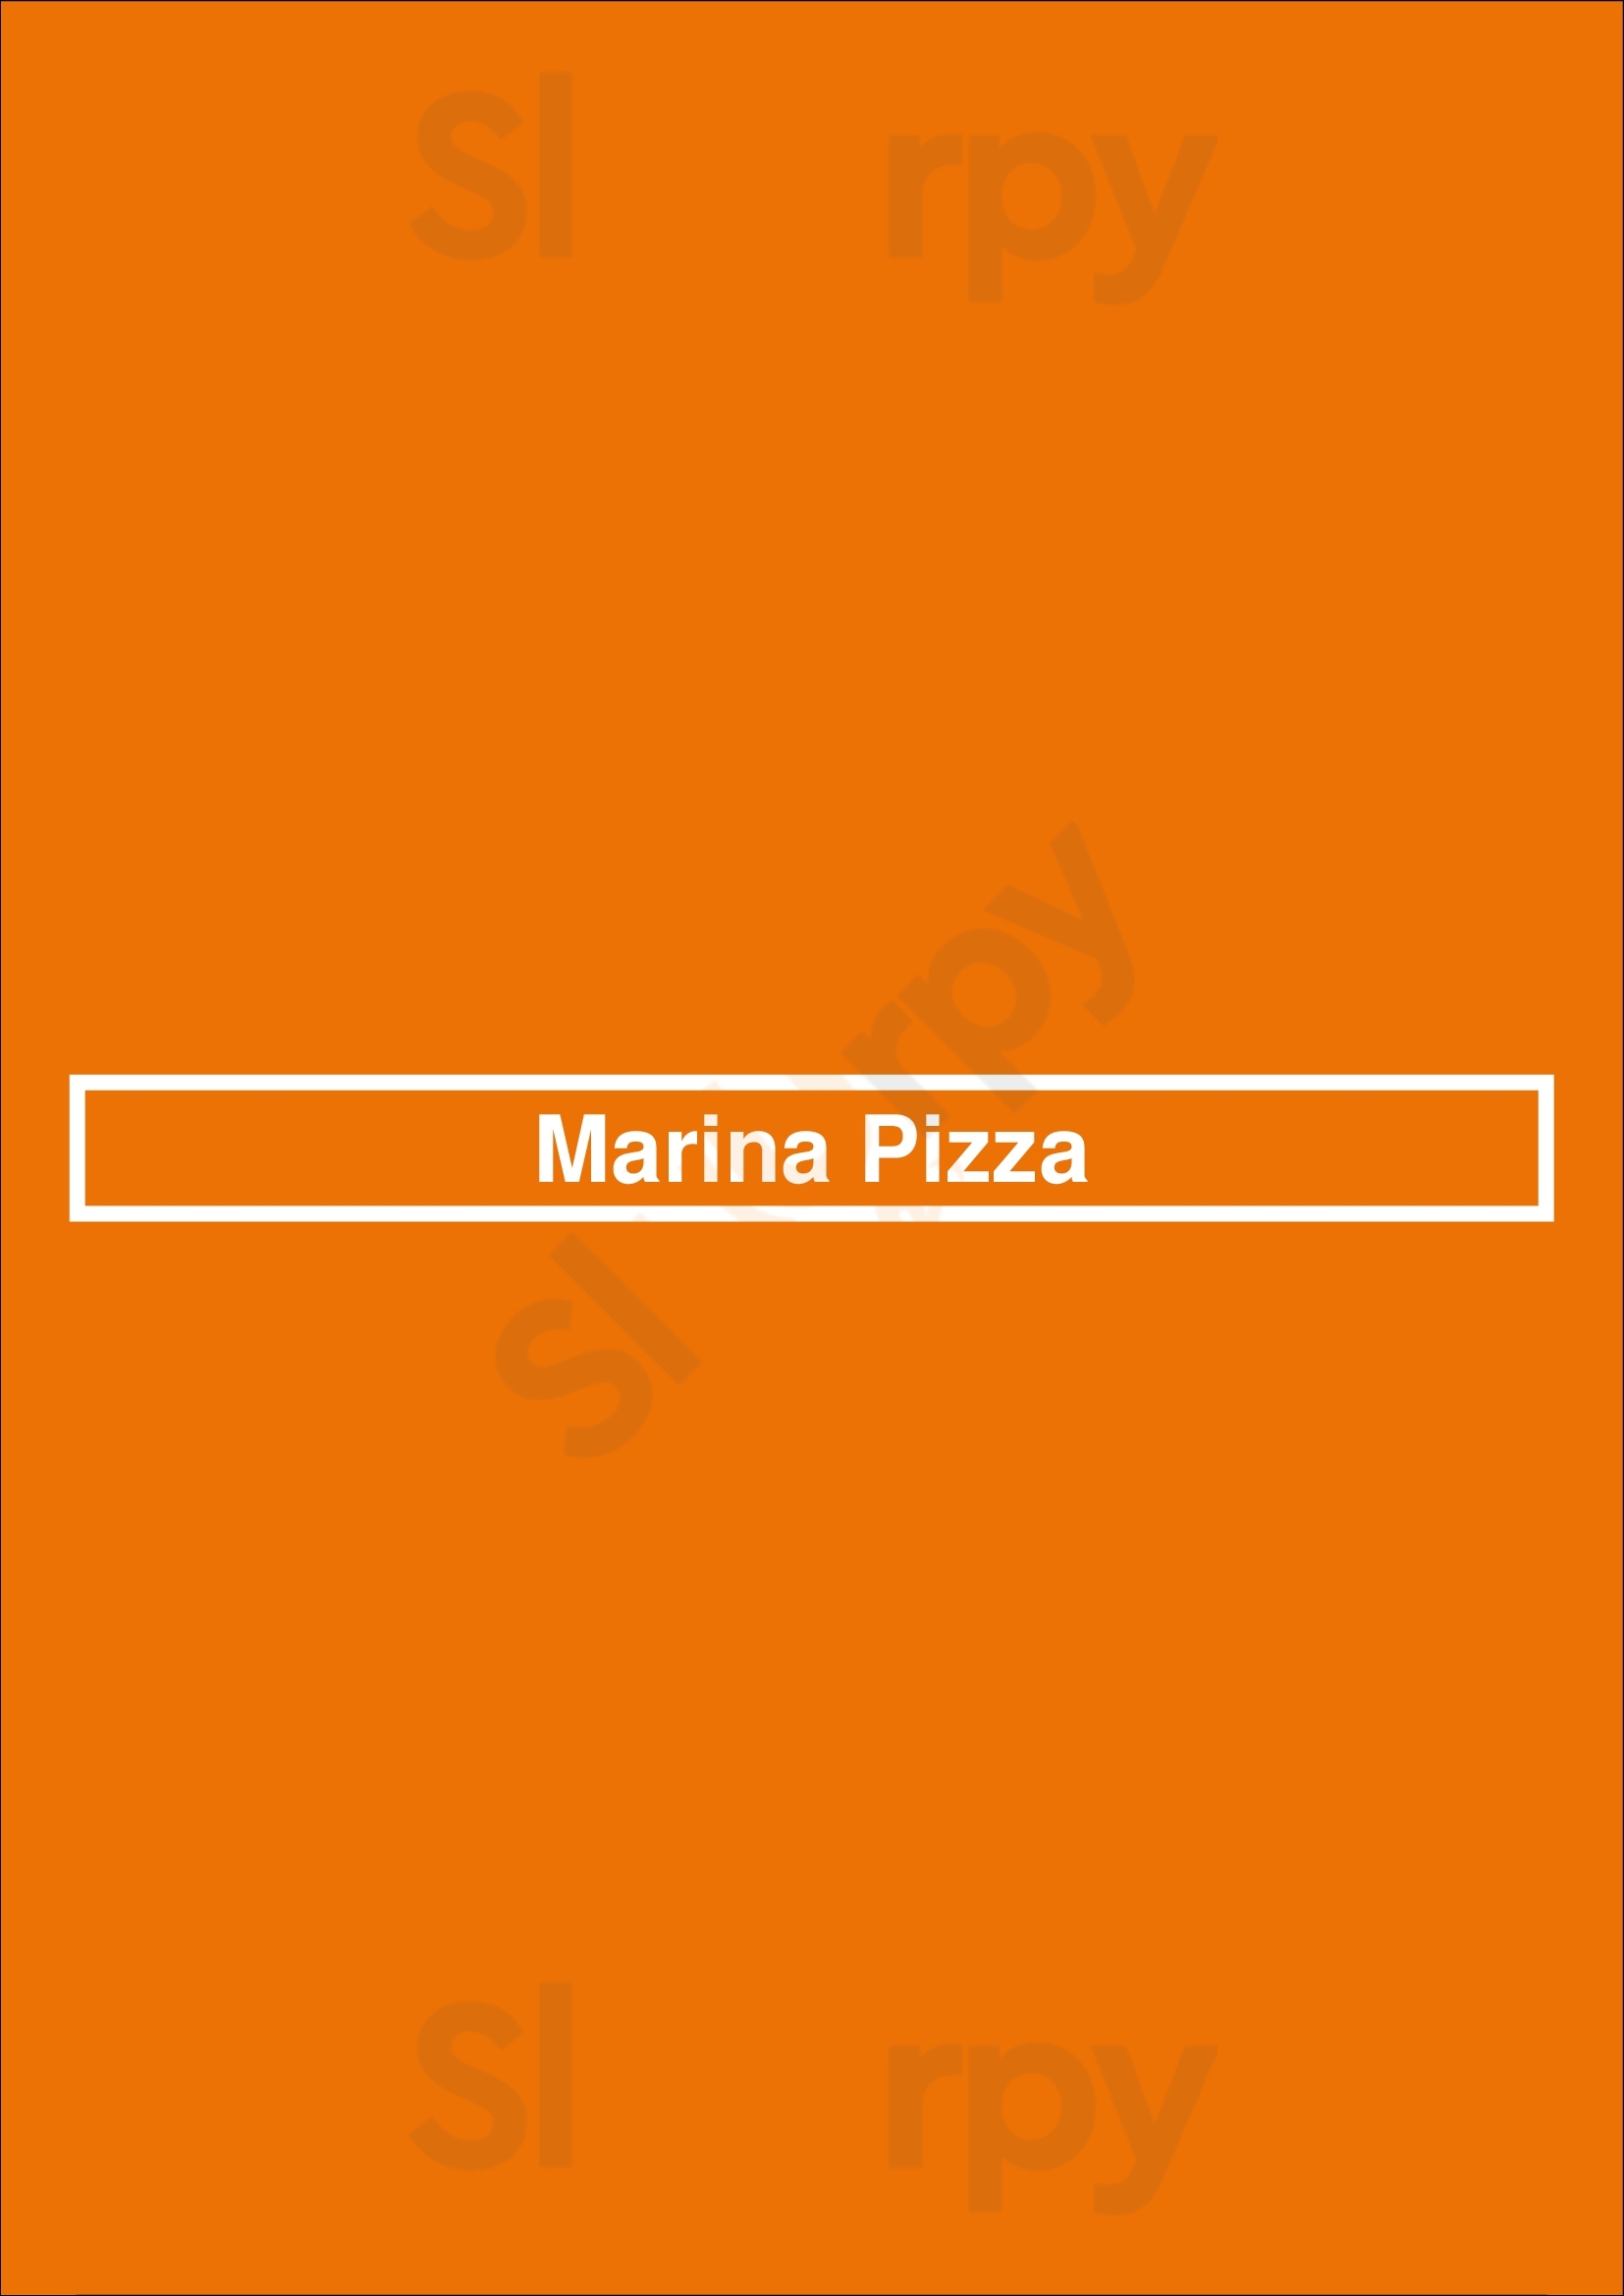 Marina Pizza Gatineau Menu - 1